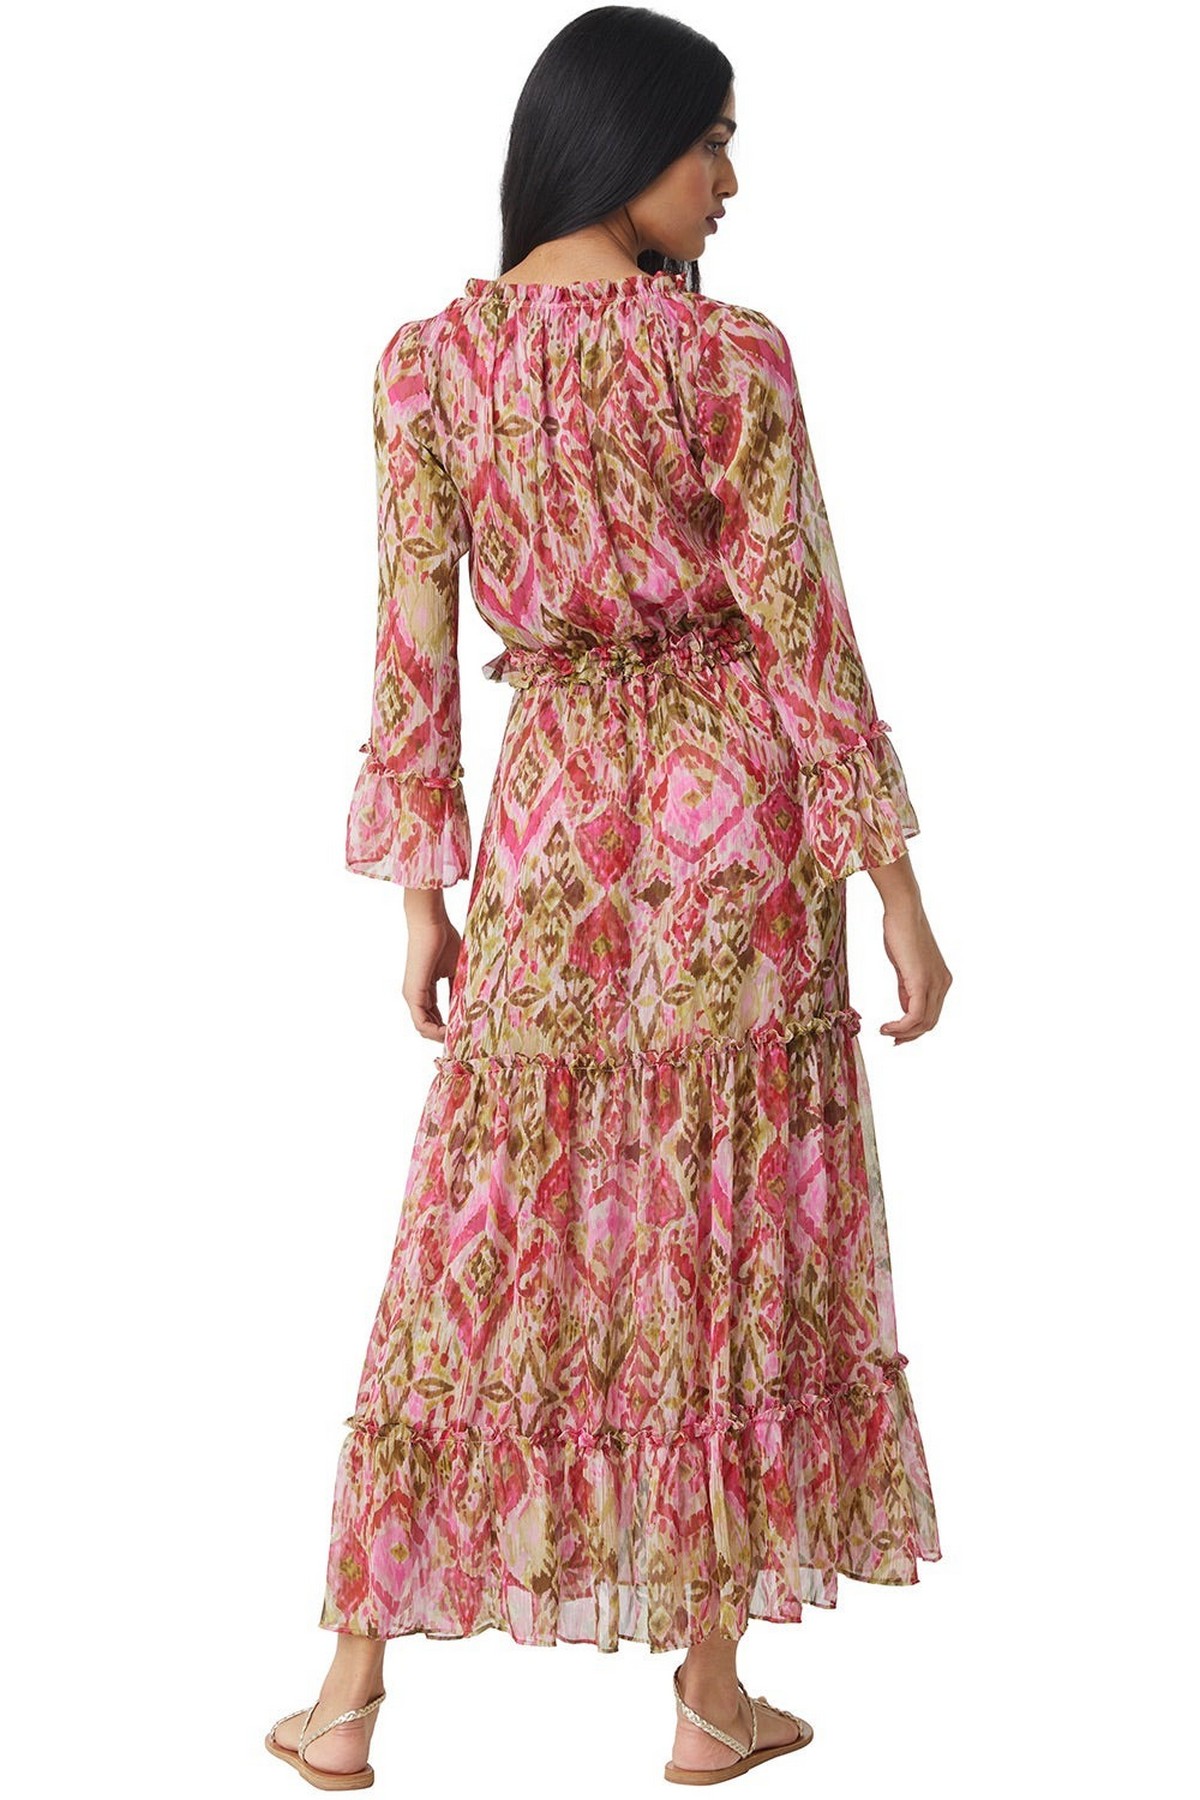 Misa - Lucinda Dress - Kleed lang etnisch roze oranje